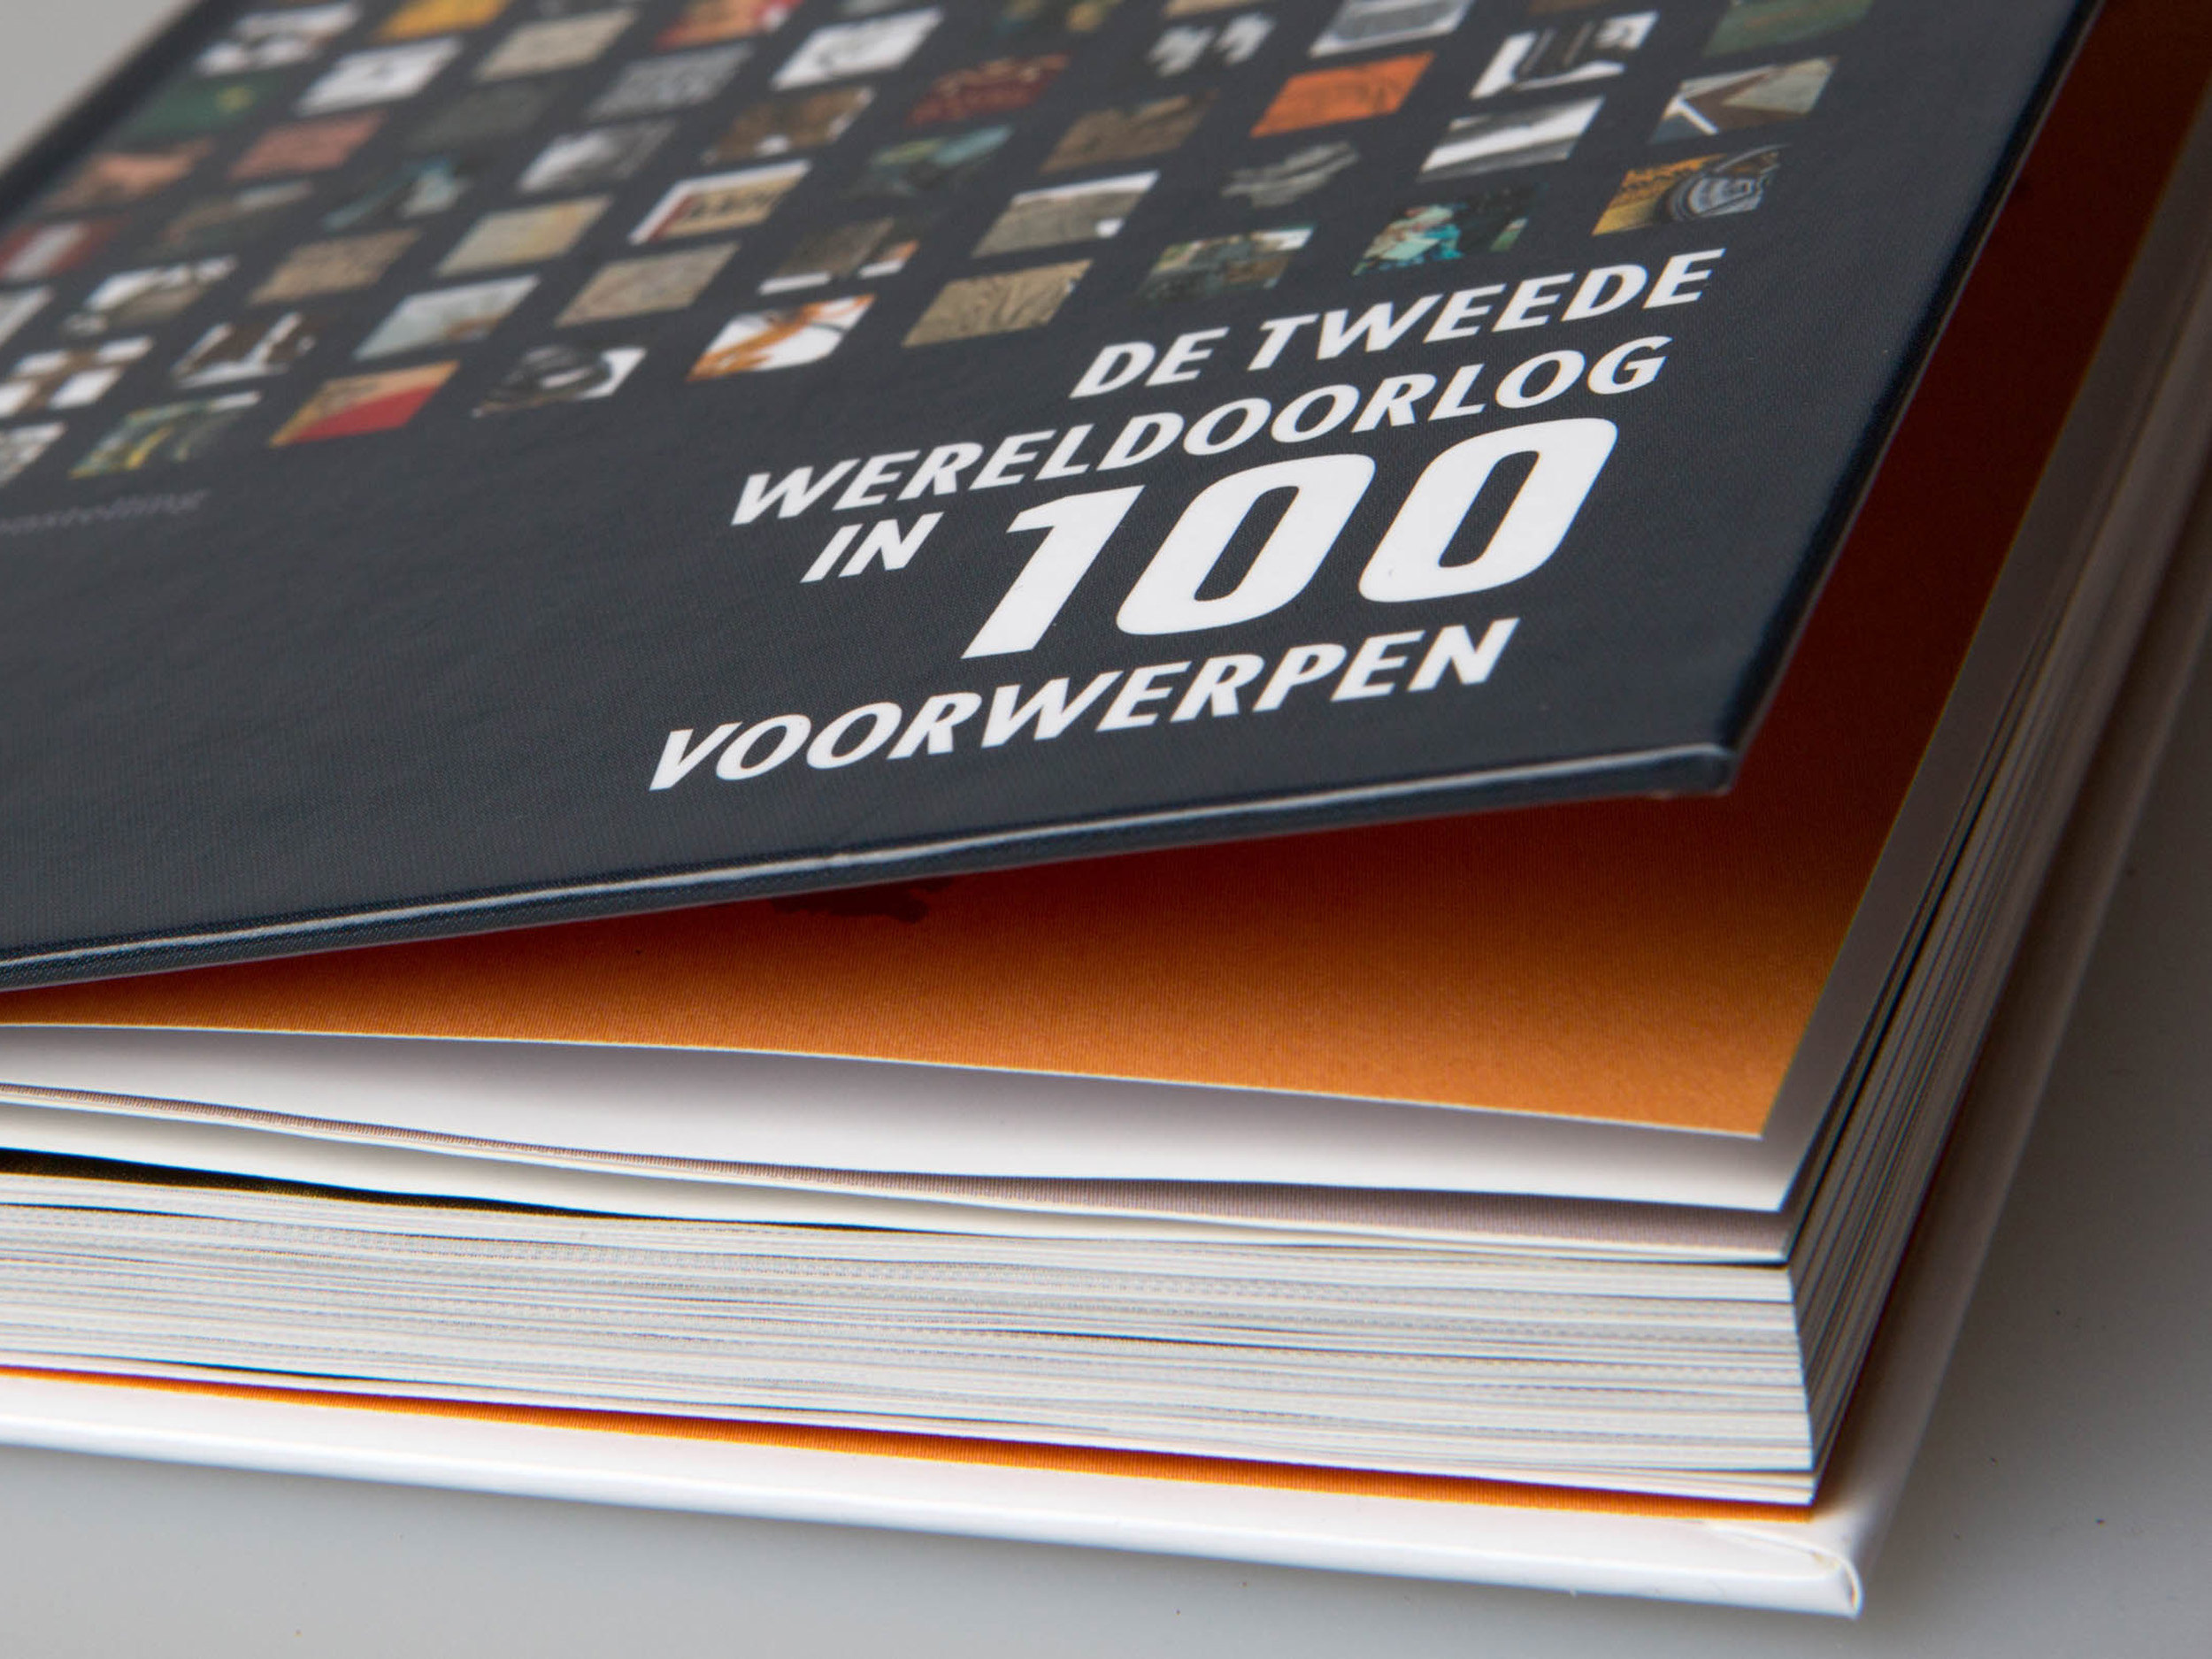 Fotografie voor boek en expositie in de kunsthal Rotterdam, De tweede wereldoorlog in 100 voorwerpen